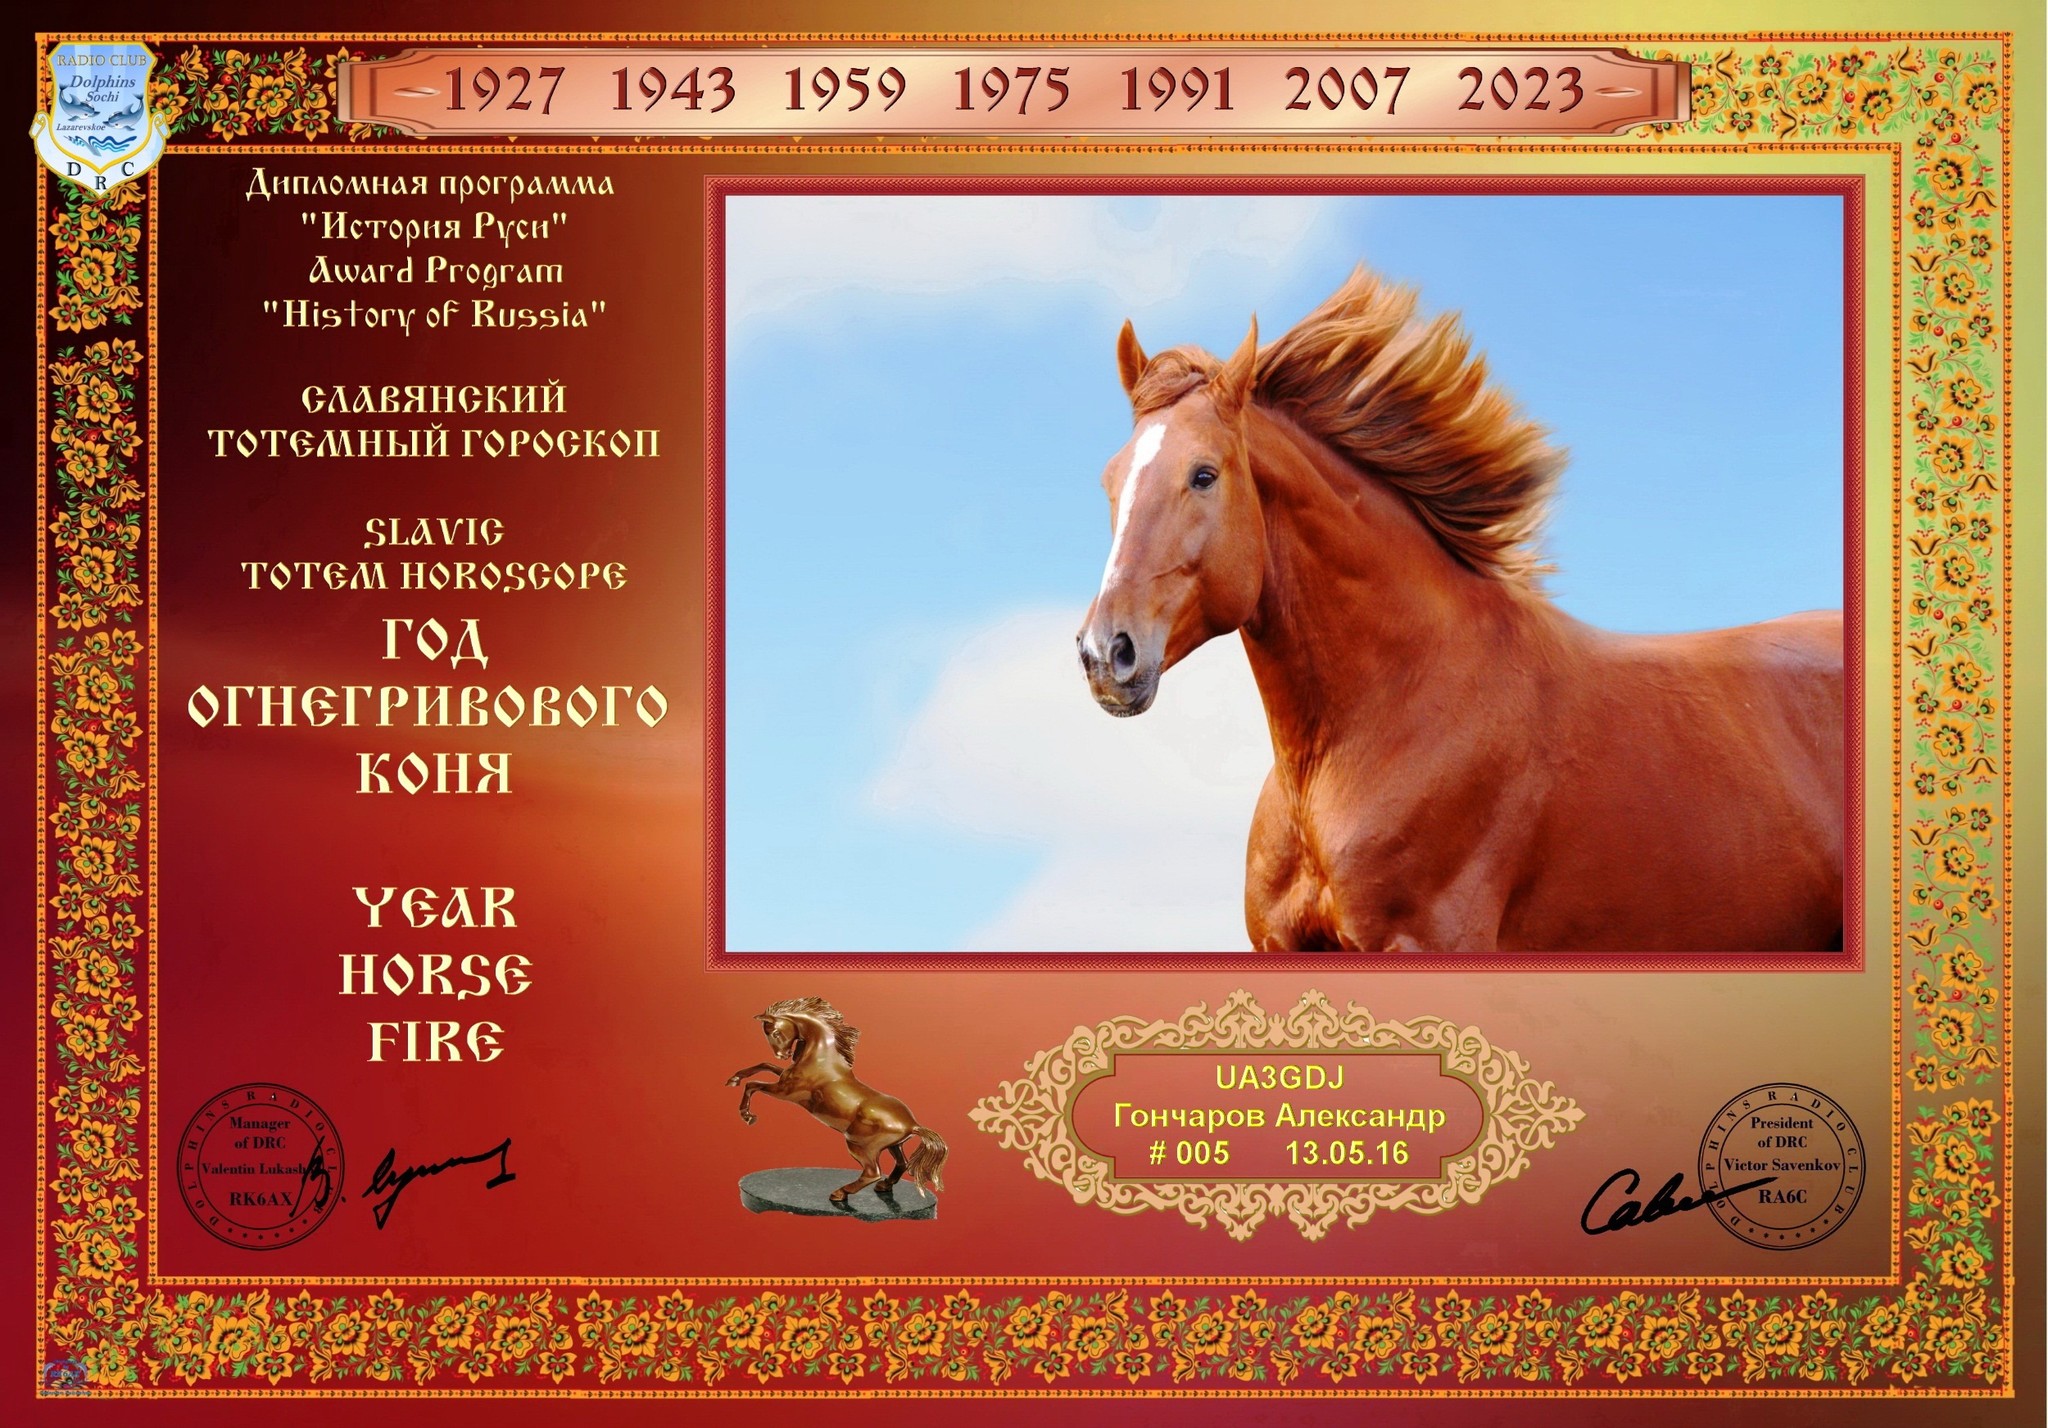 Старославянский гороскоп огнегривый конь